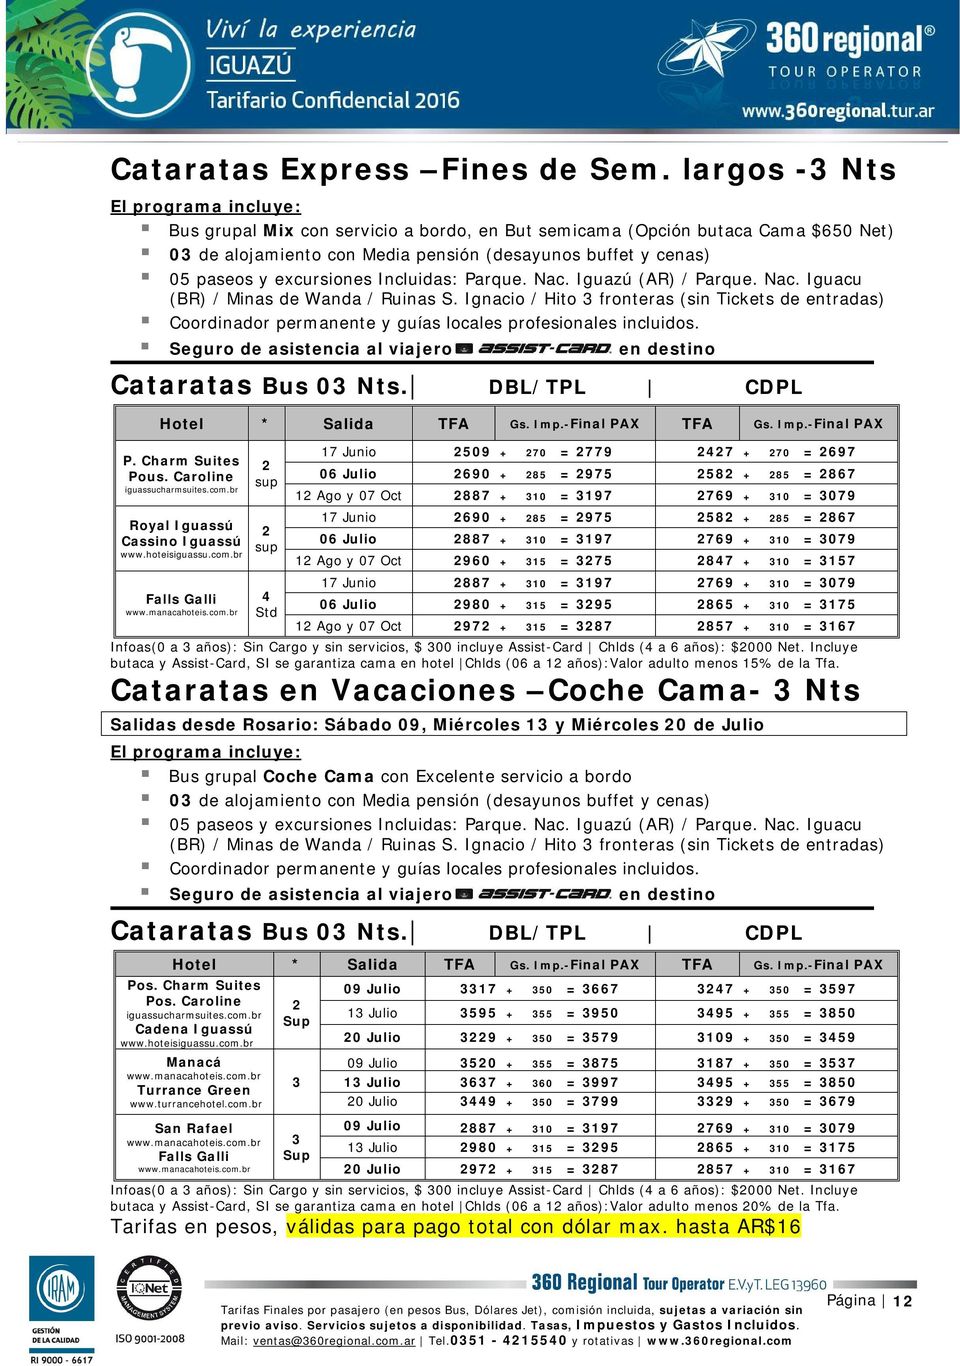 Nac. Iguazú (AR) / Parque. Nac. Iguacu (BR) / Minas de Wanda / Ruinas S. Ignacio / Hito fronteras (sin Tickets de entradas) Coordinador permanente y guías locales profesionales incluidos.